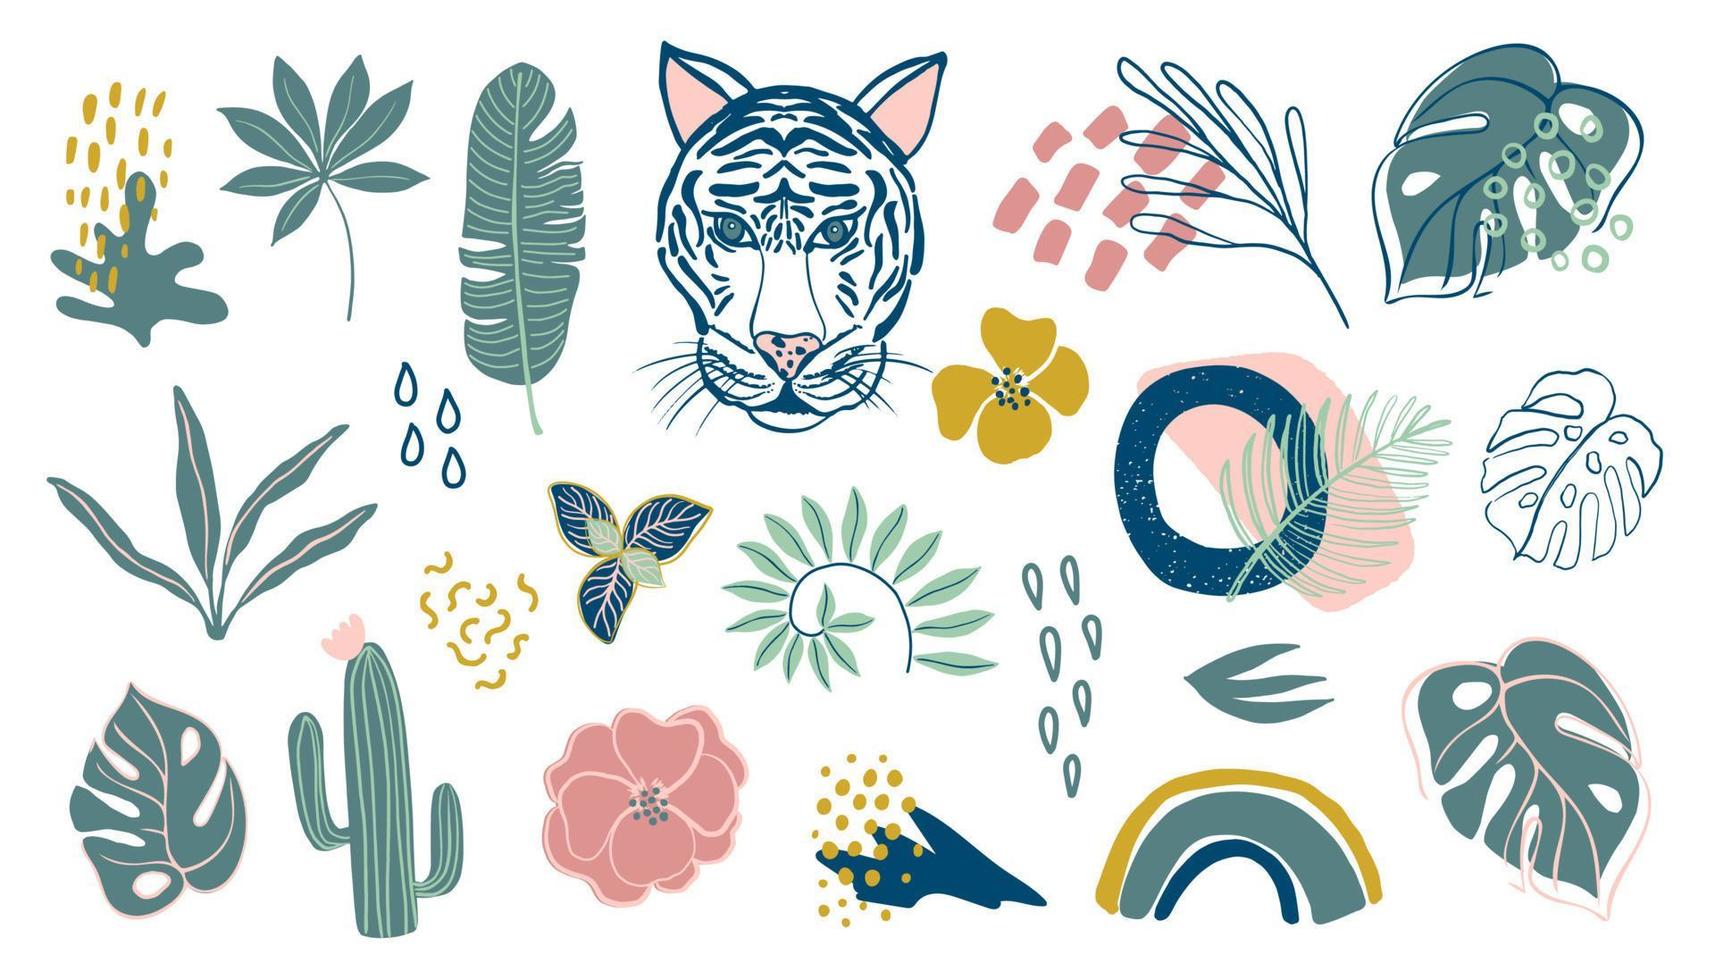 gran conjunto con hojas tropicales, cactus, tigre y texturas abstractas. colección de plantas ilustraciones vectoriales digitales en estilo simple dibujado a mano. todas las ilustraciones están aisladas. vector